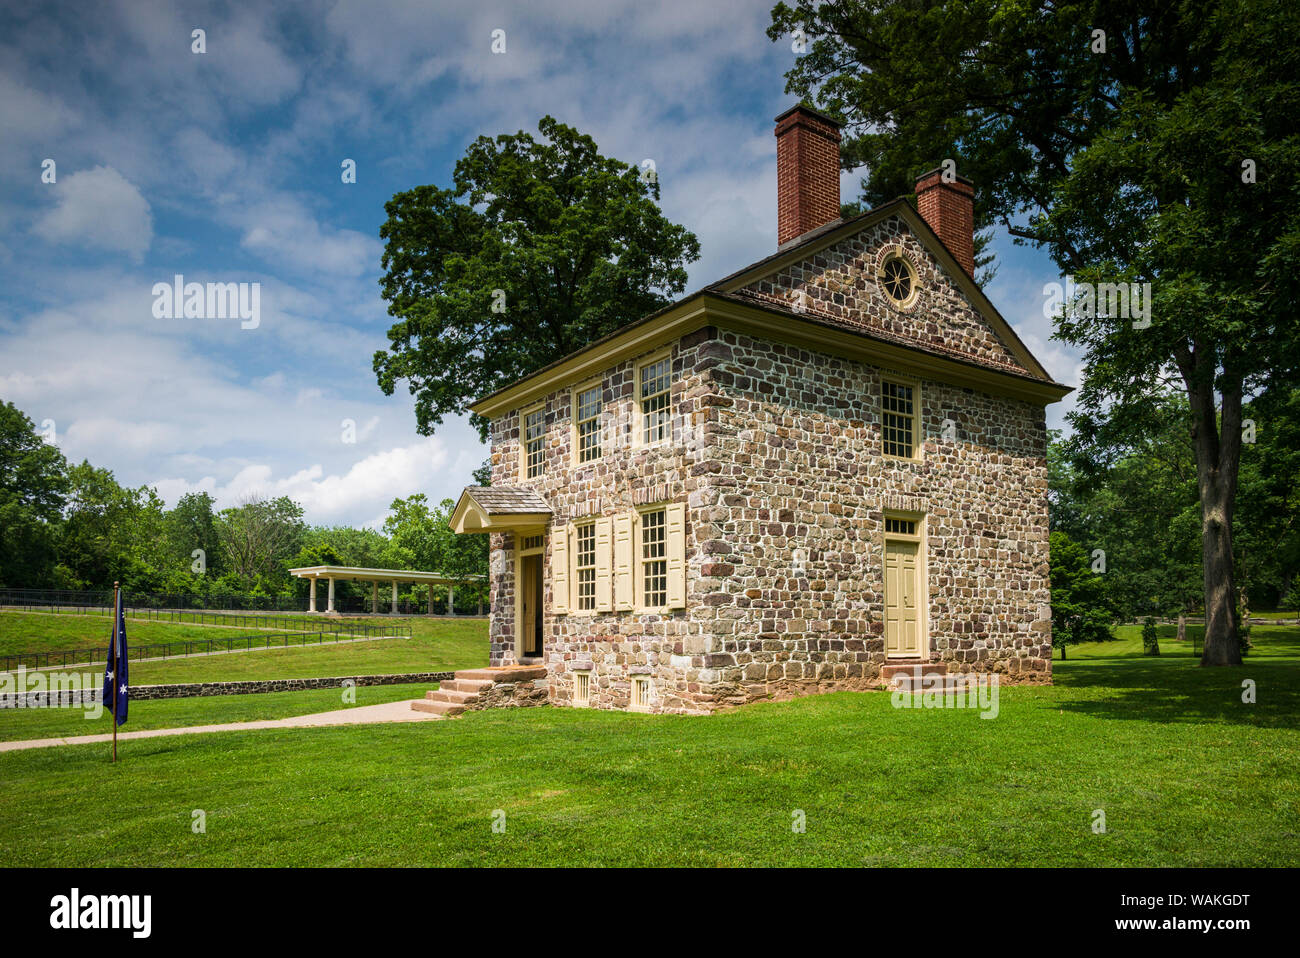 USA, Pennsylvania, König von Preußen. Valley Forge National Historical Park, Schlachtfeld der amerikanischen revolutionären Krieg, General George Washington's Stockfoto